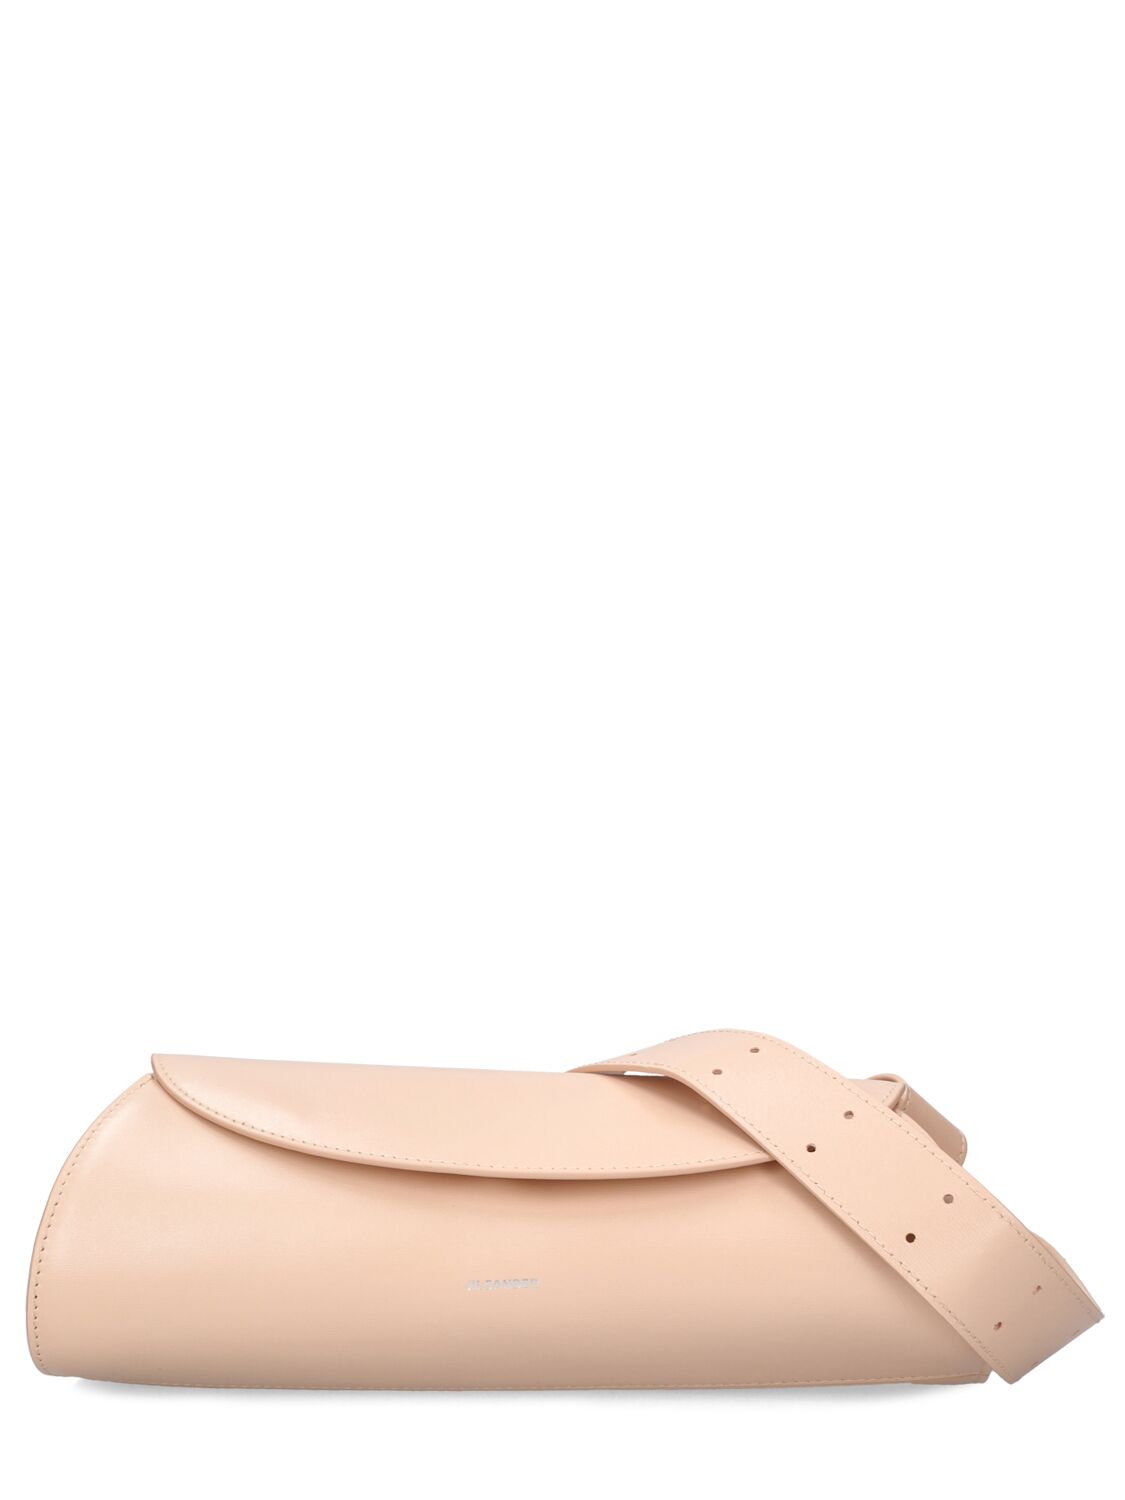 Shop Jil Sander Small Cannolo Leather Shoulder Bag In Rose